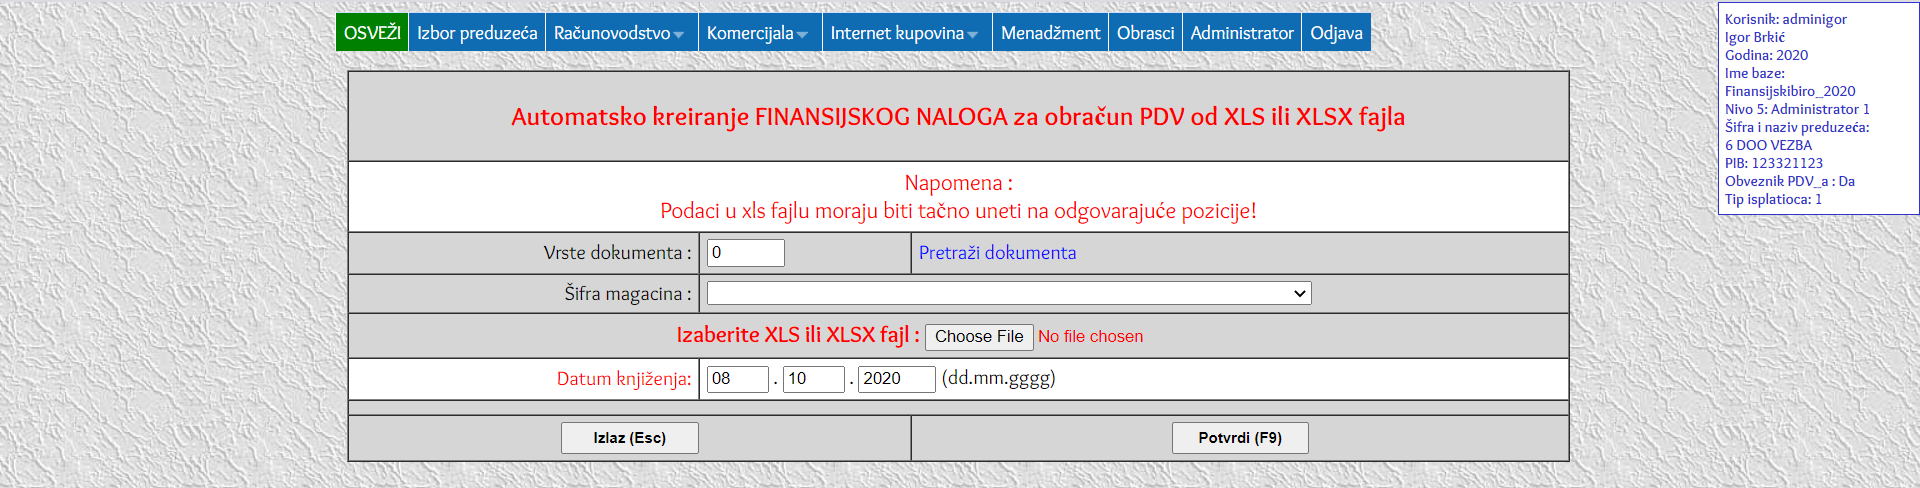 Automatsko kreiranje FINANSIJSKOG NALOGA za obračun PDV od XLS ili XLSX fajla